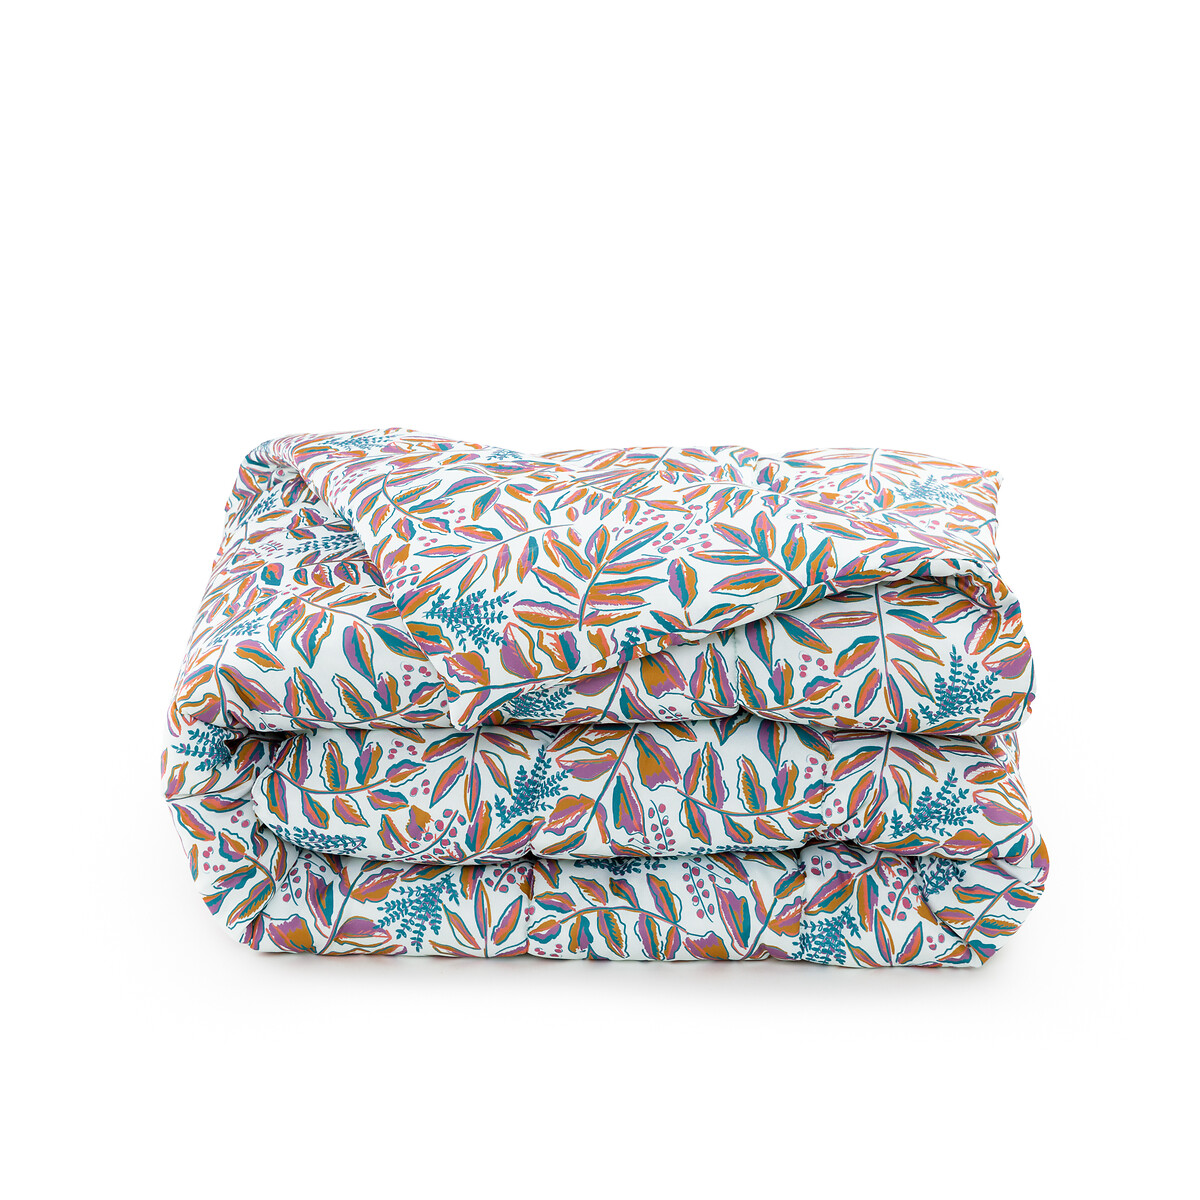 Одеяло из переработанной микрофибры с принтом Barbora  140 x 200 см каштановый LaRedoute, размер 140 x 200 см - фото 5